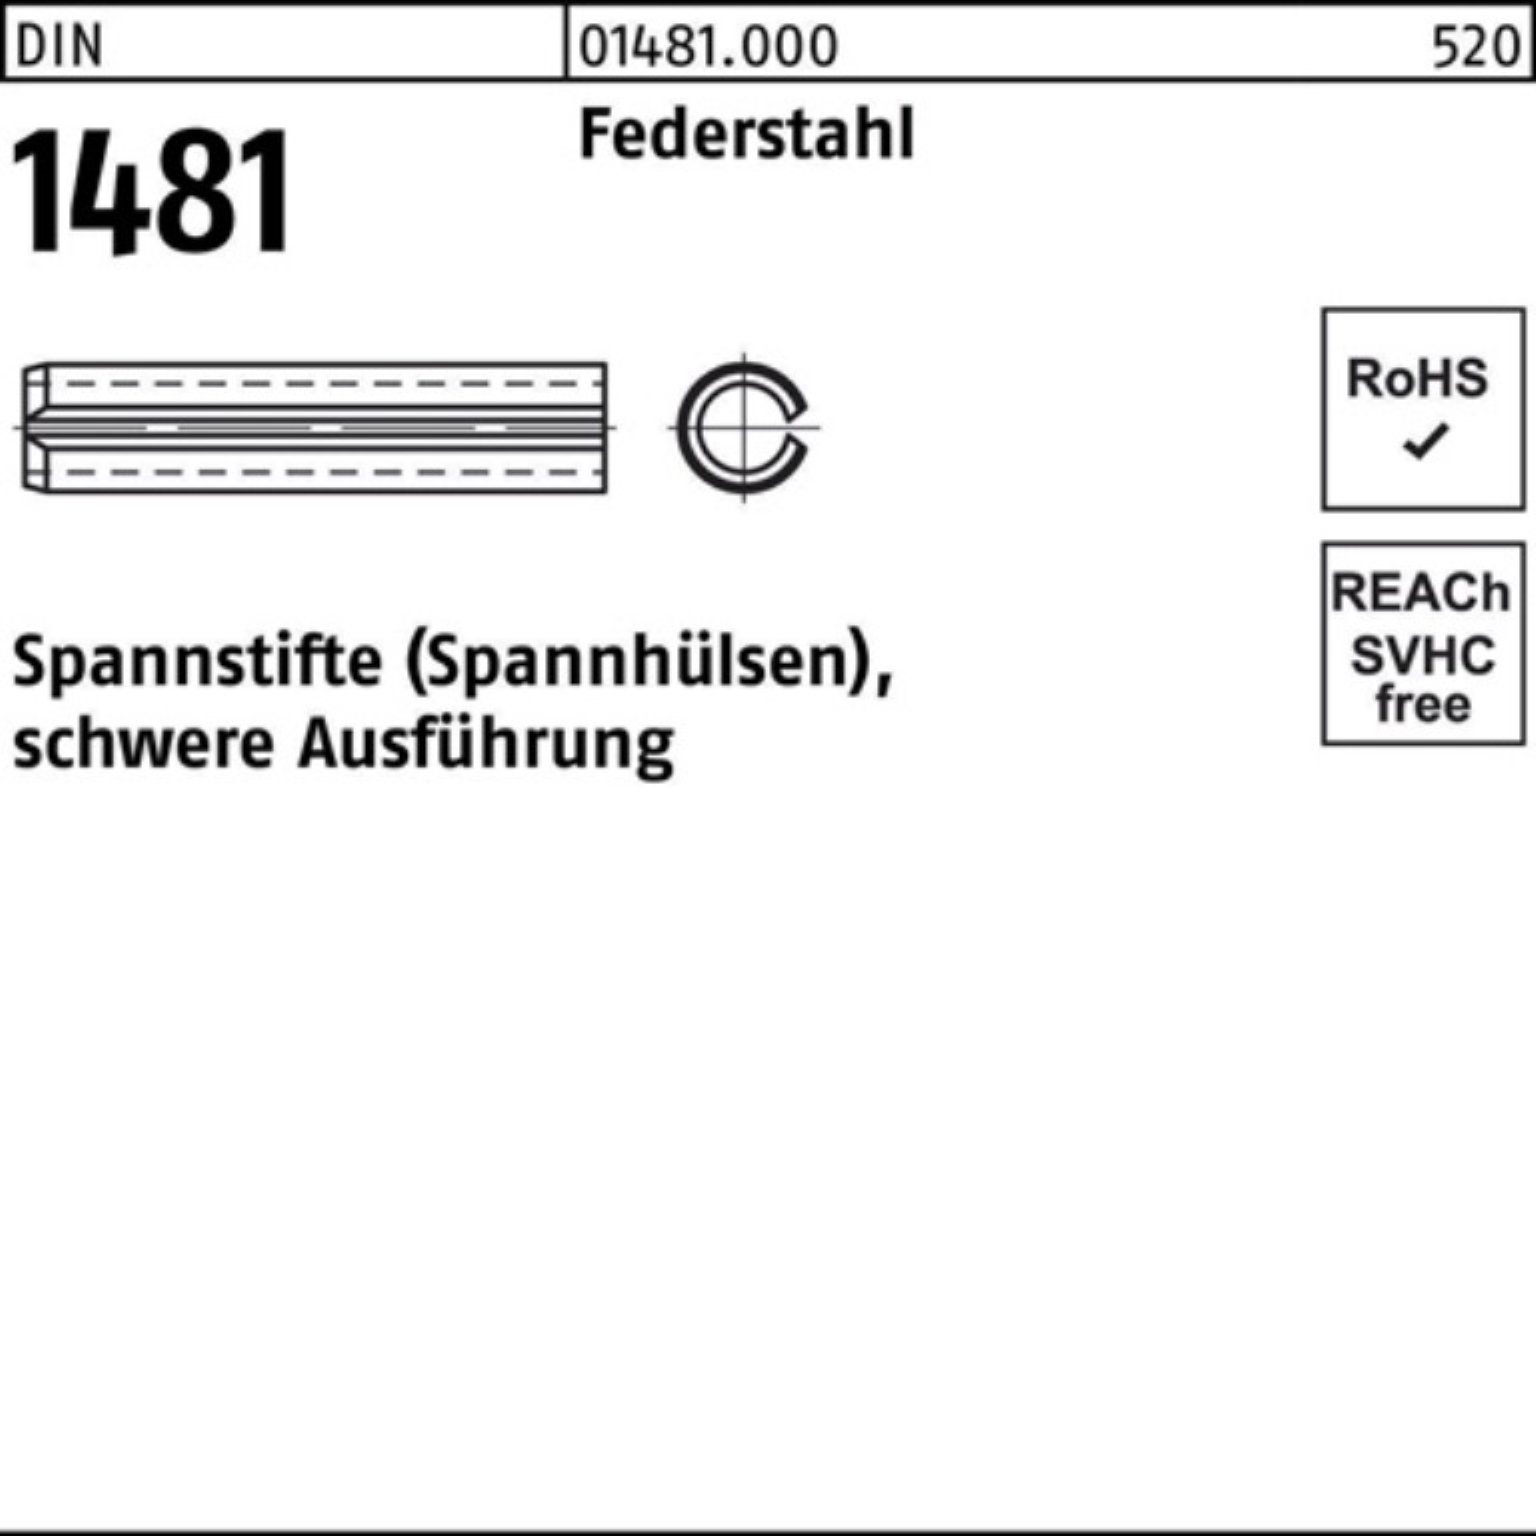 Reyher Spannstift 100er Pack Spannstift DIN 1481 14x 75 Federstahl schwere Ausführung 2